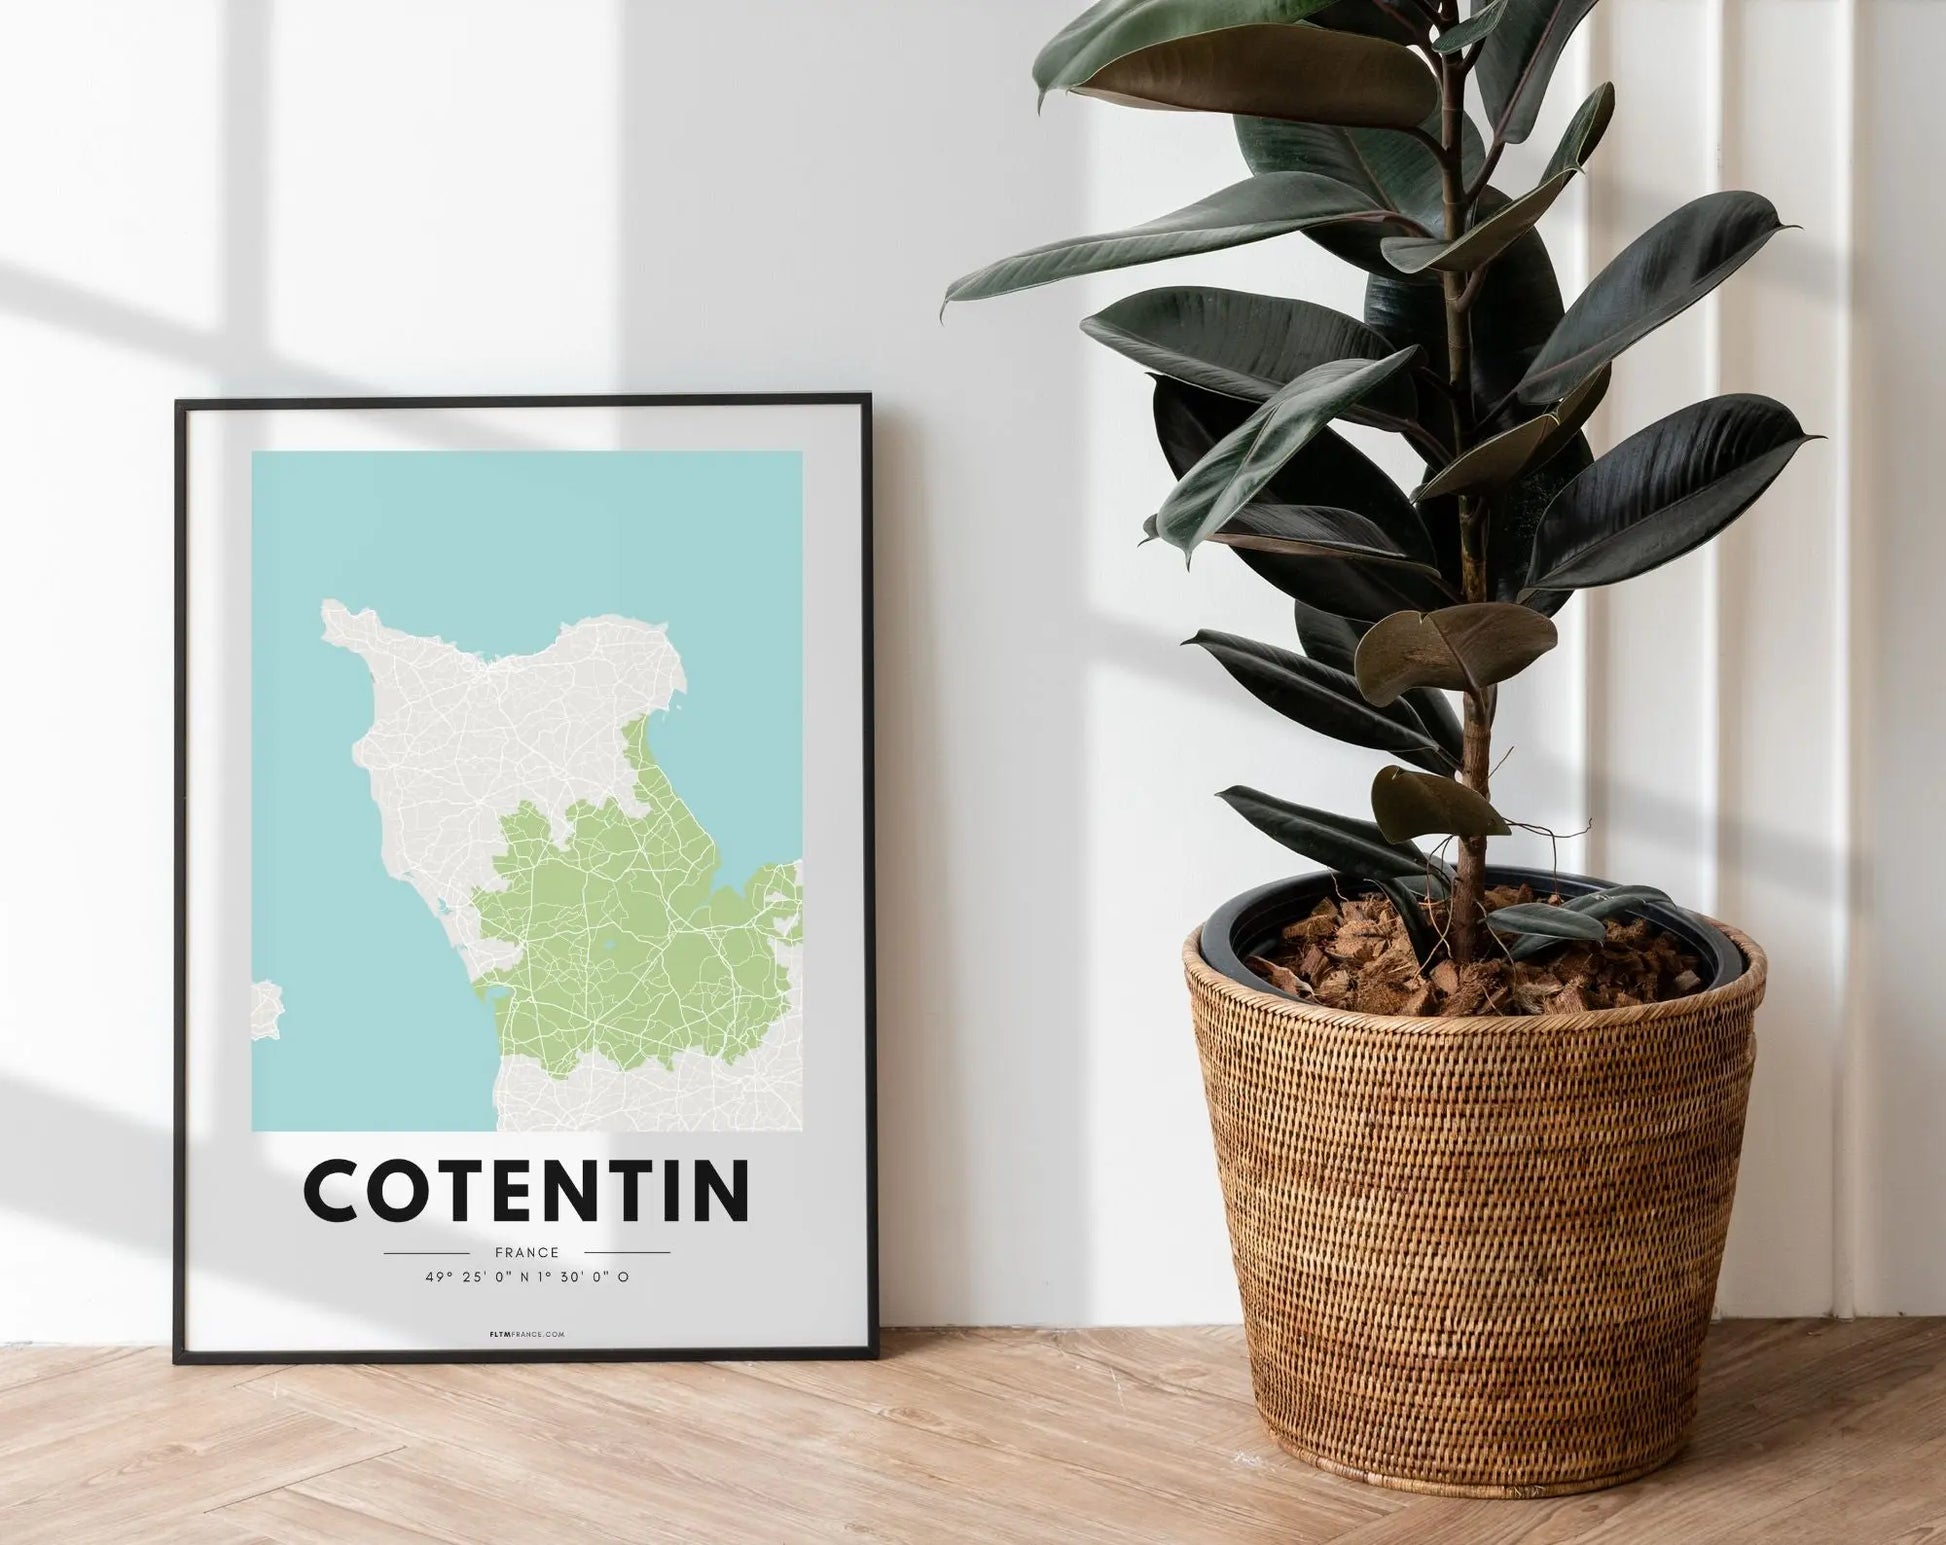 Affiche carte Cotentin - Région de France FLTMfrance